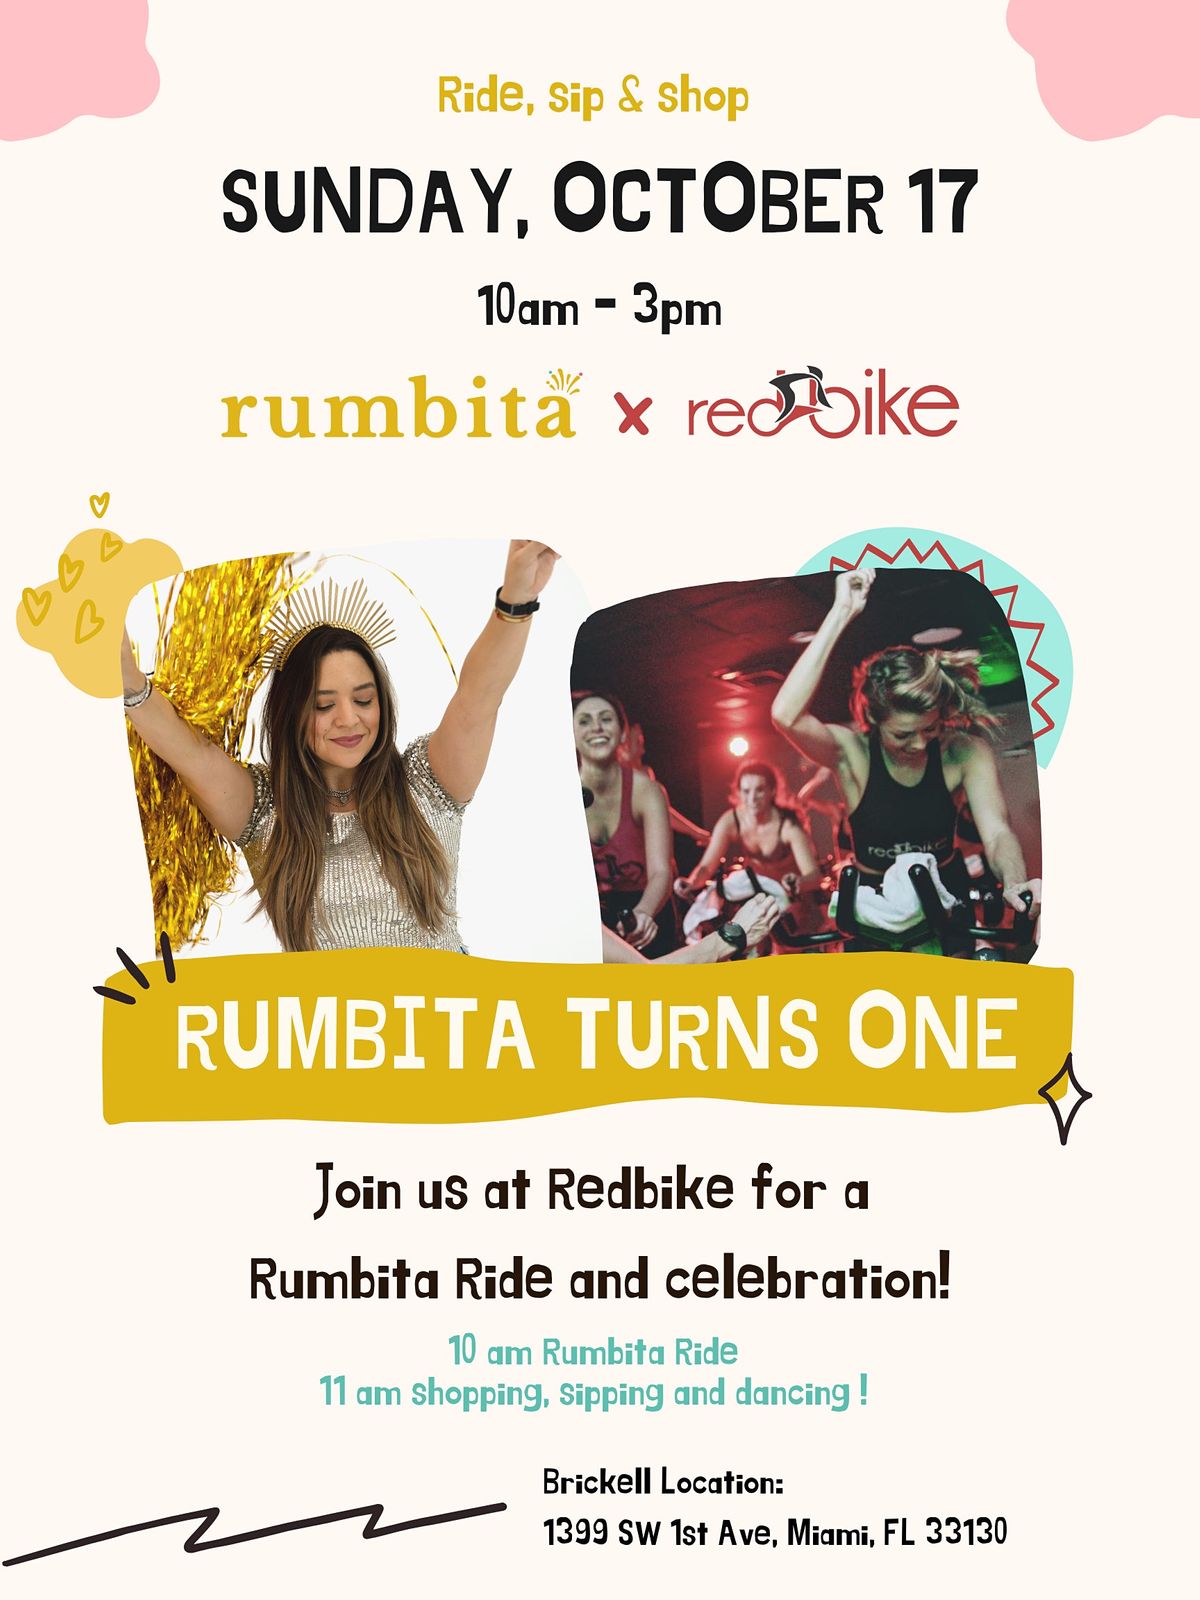 Ride, Sip & Shop - Rumbita turns 1!